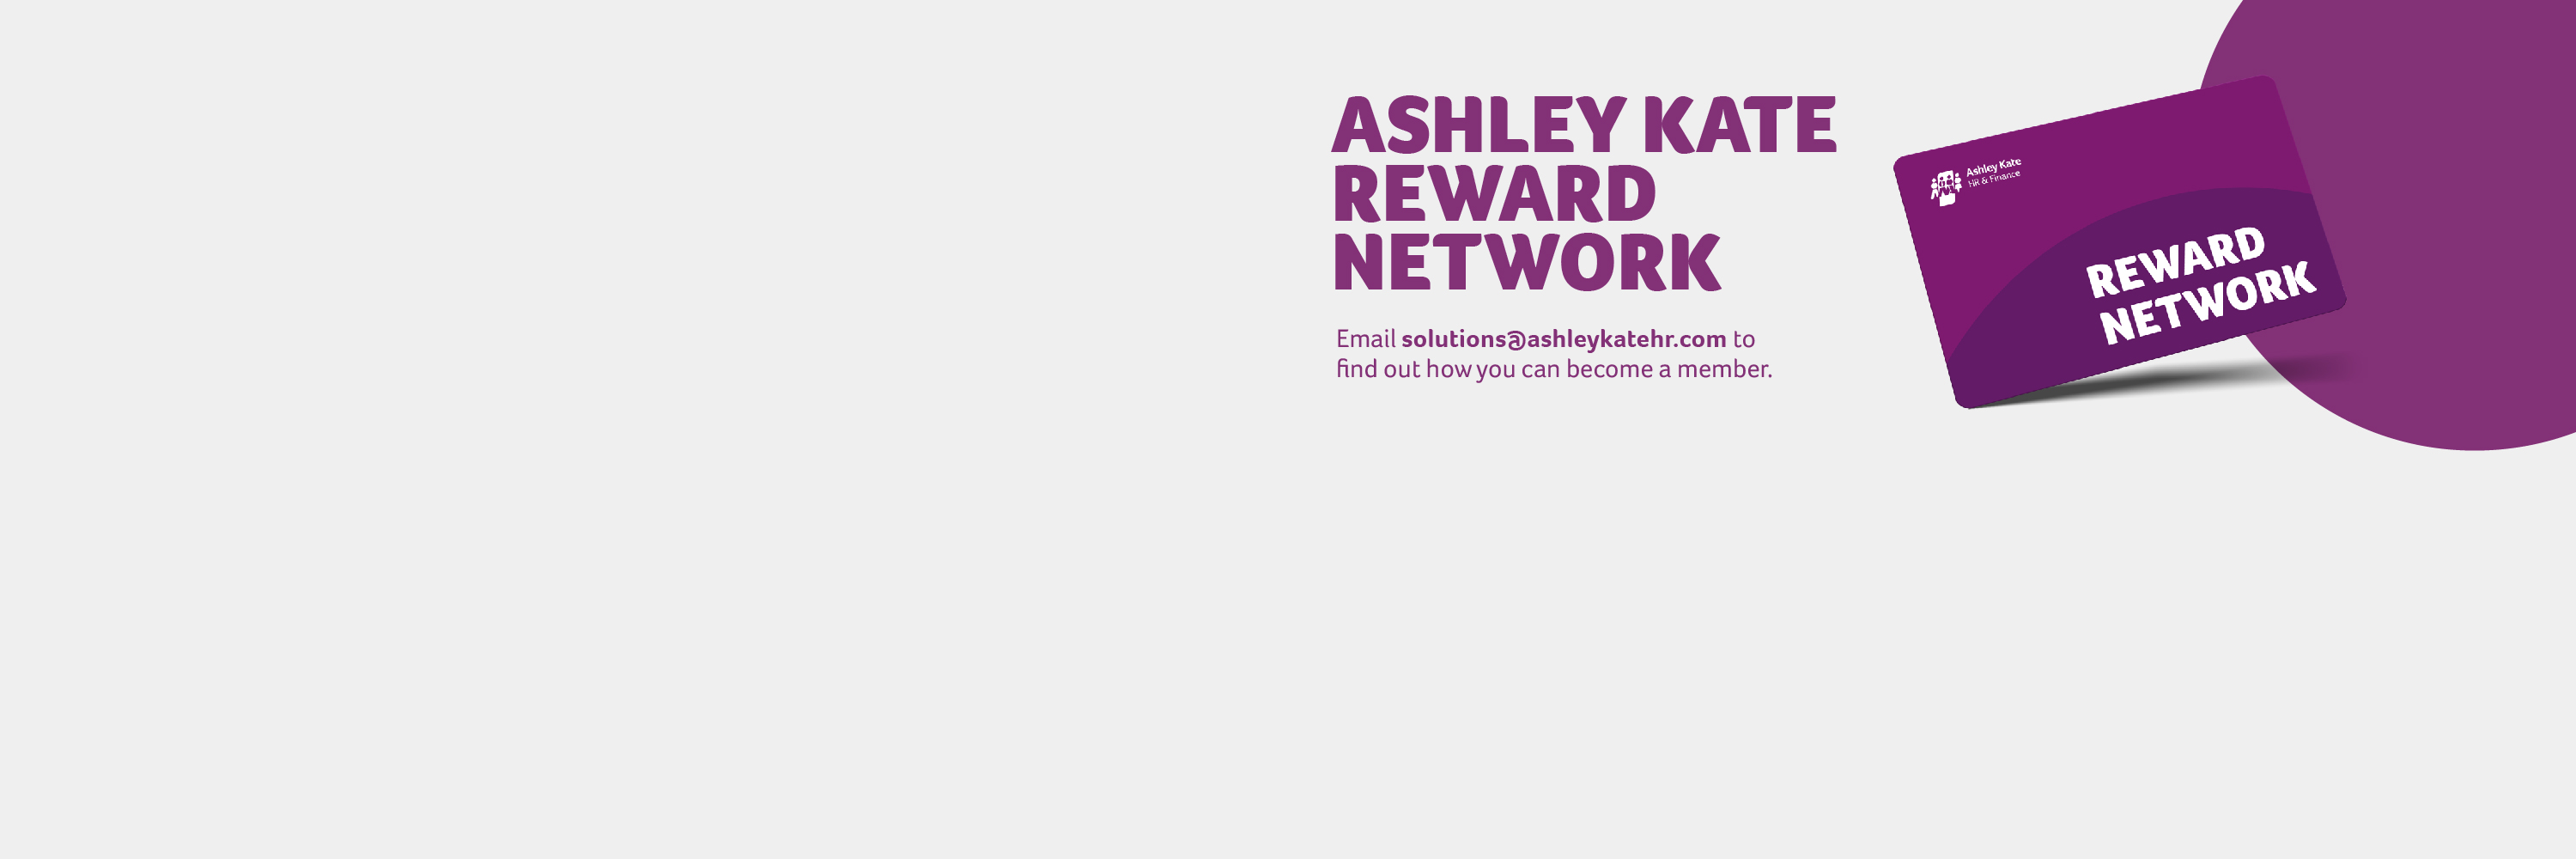 Reward Network